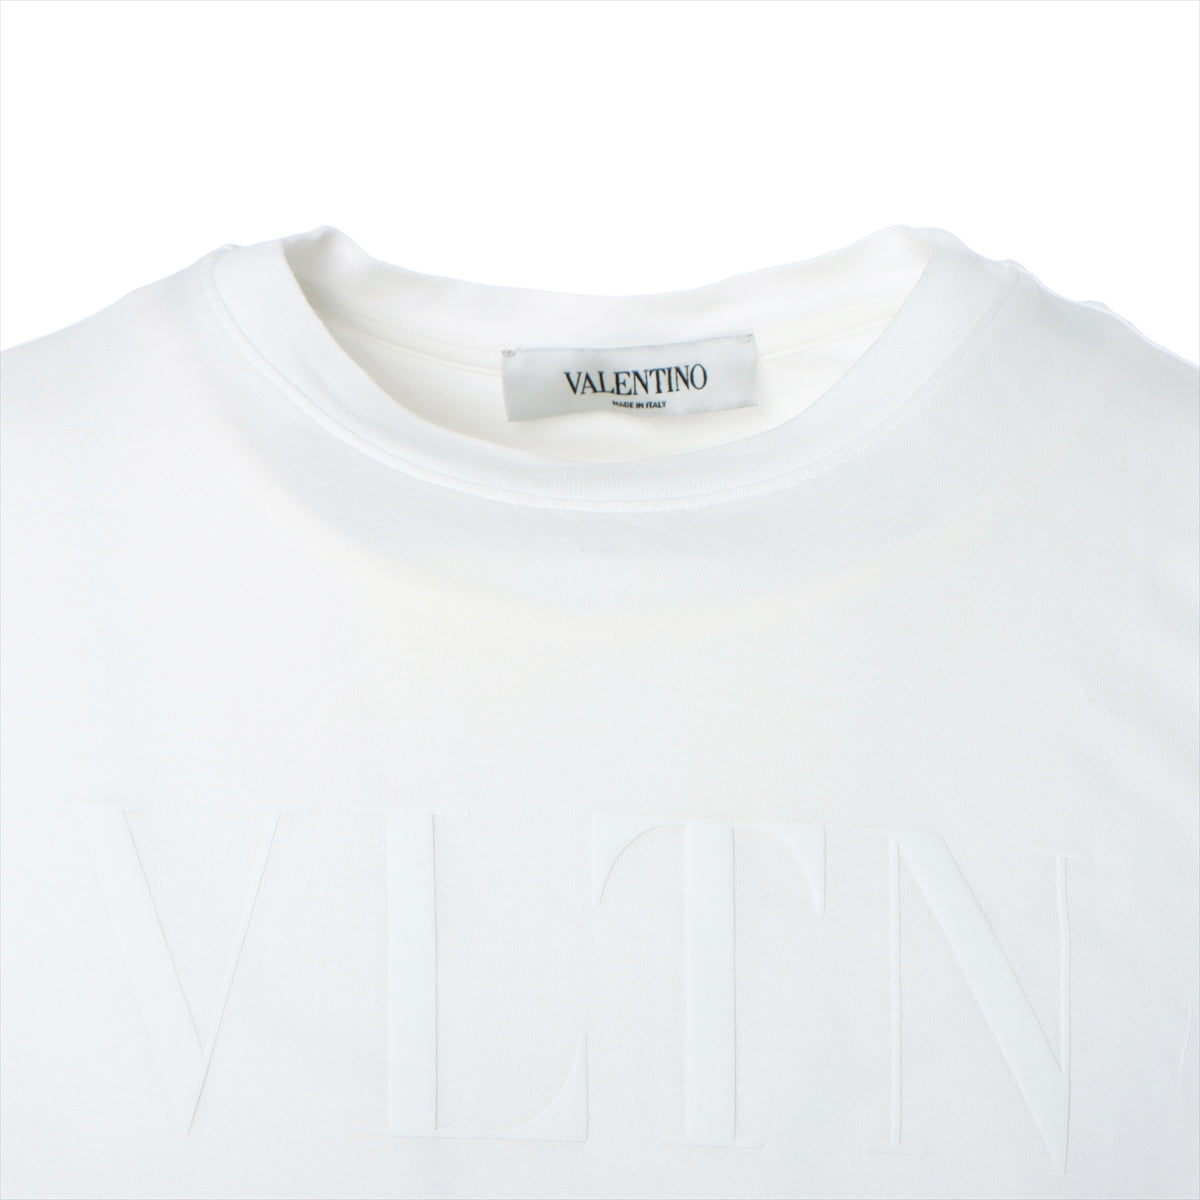 VALENTINO Tシャツ XS ホワイト変更しました - Tシャツ/カットソー ...